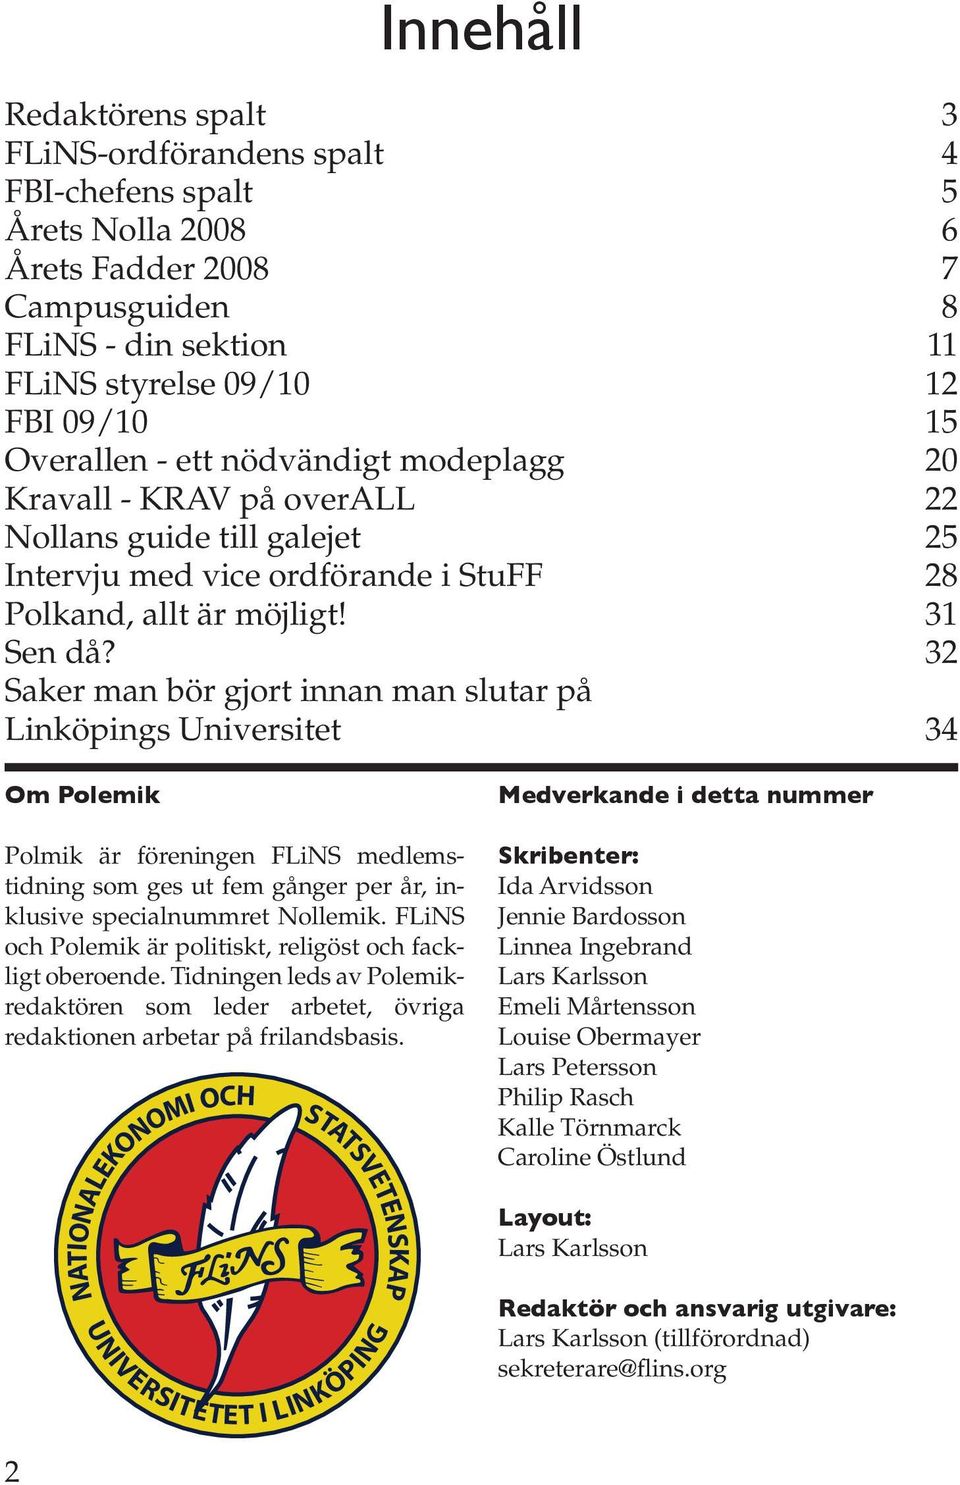 32 Saker man bör gjort innan man slutar på Linköpings Universitet 34 Om Polemik Polmik är föreningen FLiNS medlemstidning som ges ut fem gånger per år, inklusive specialnummret Nollemik.